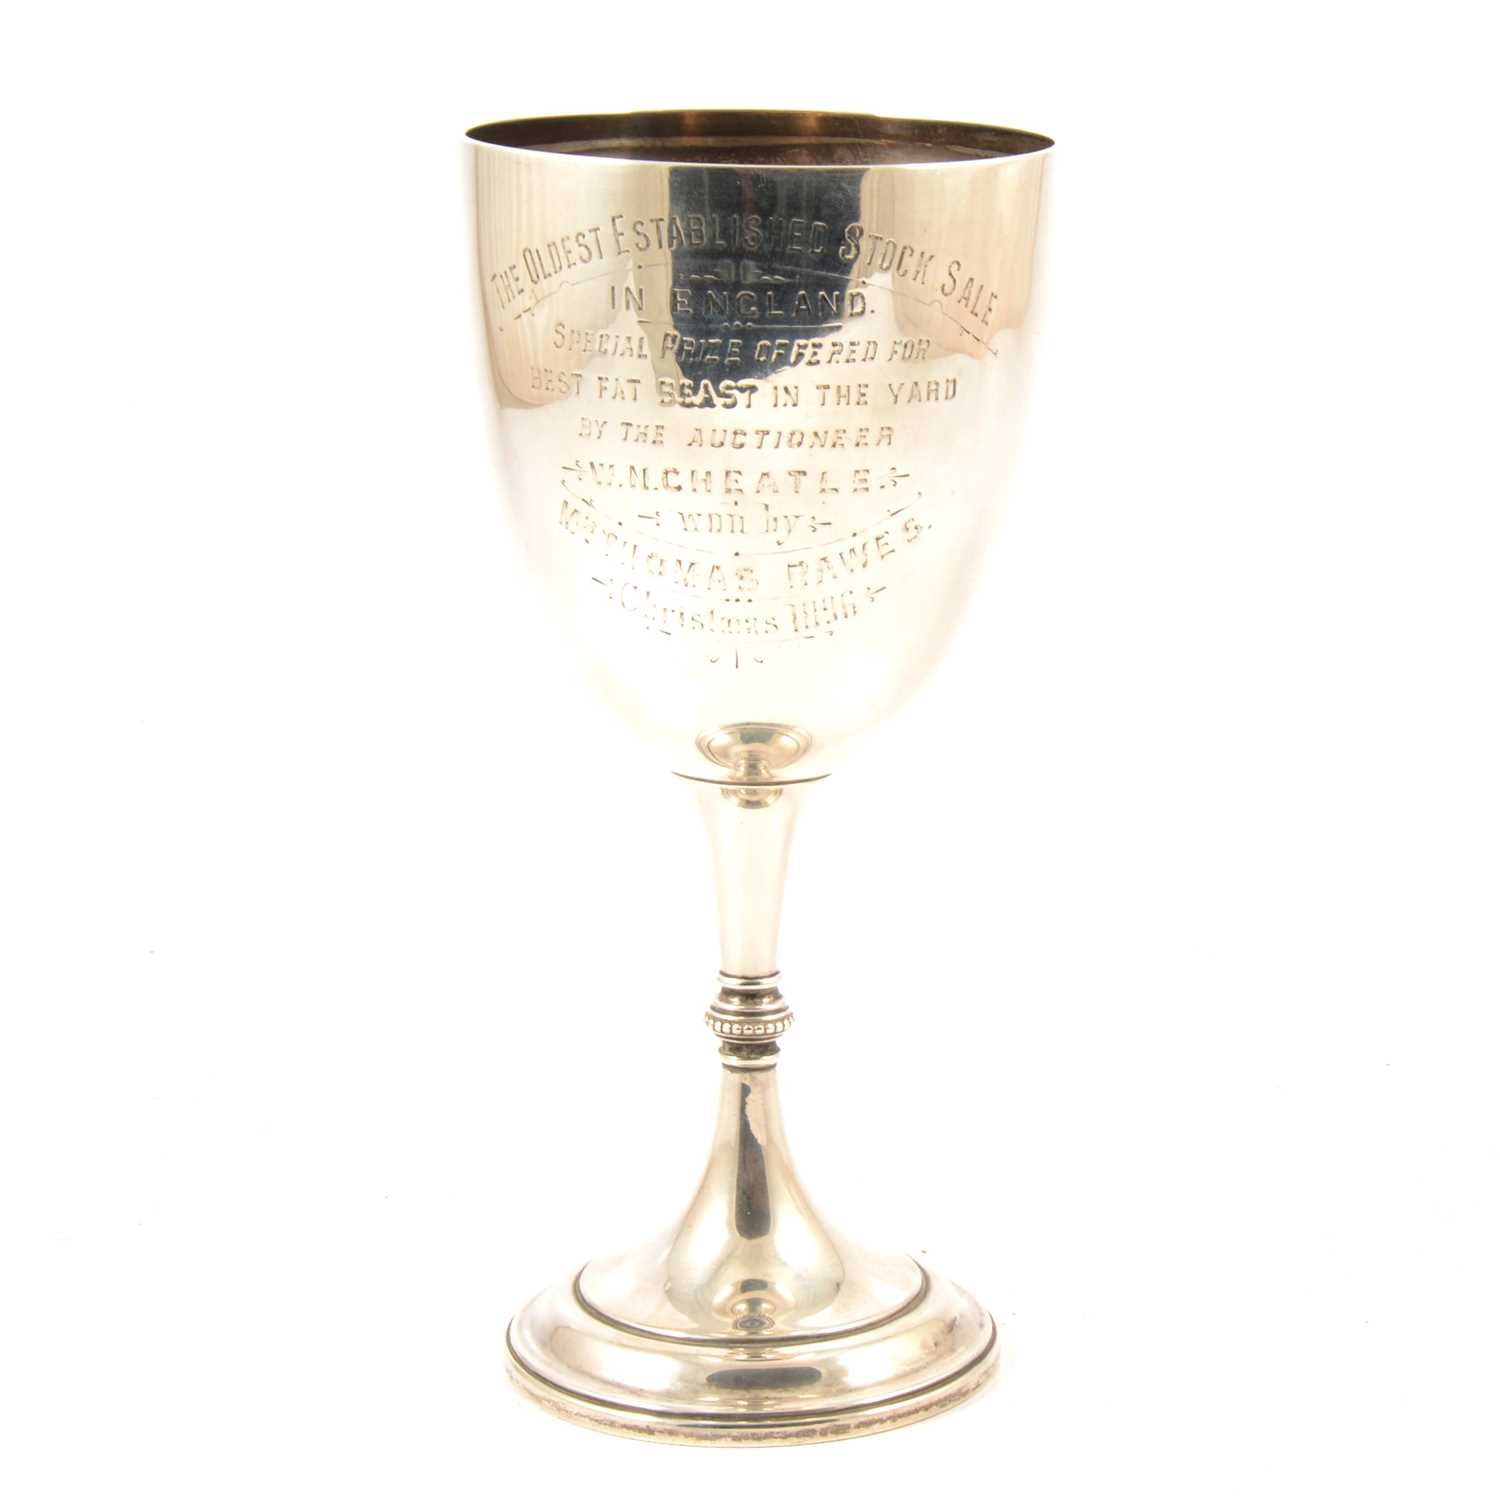 Lot 79 - Victorian silver goblet, Elkington & Co, London 1895